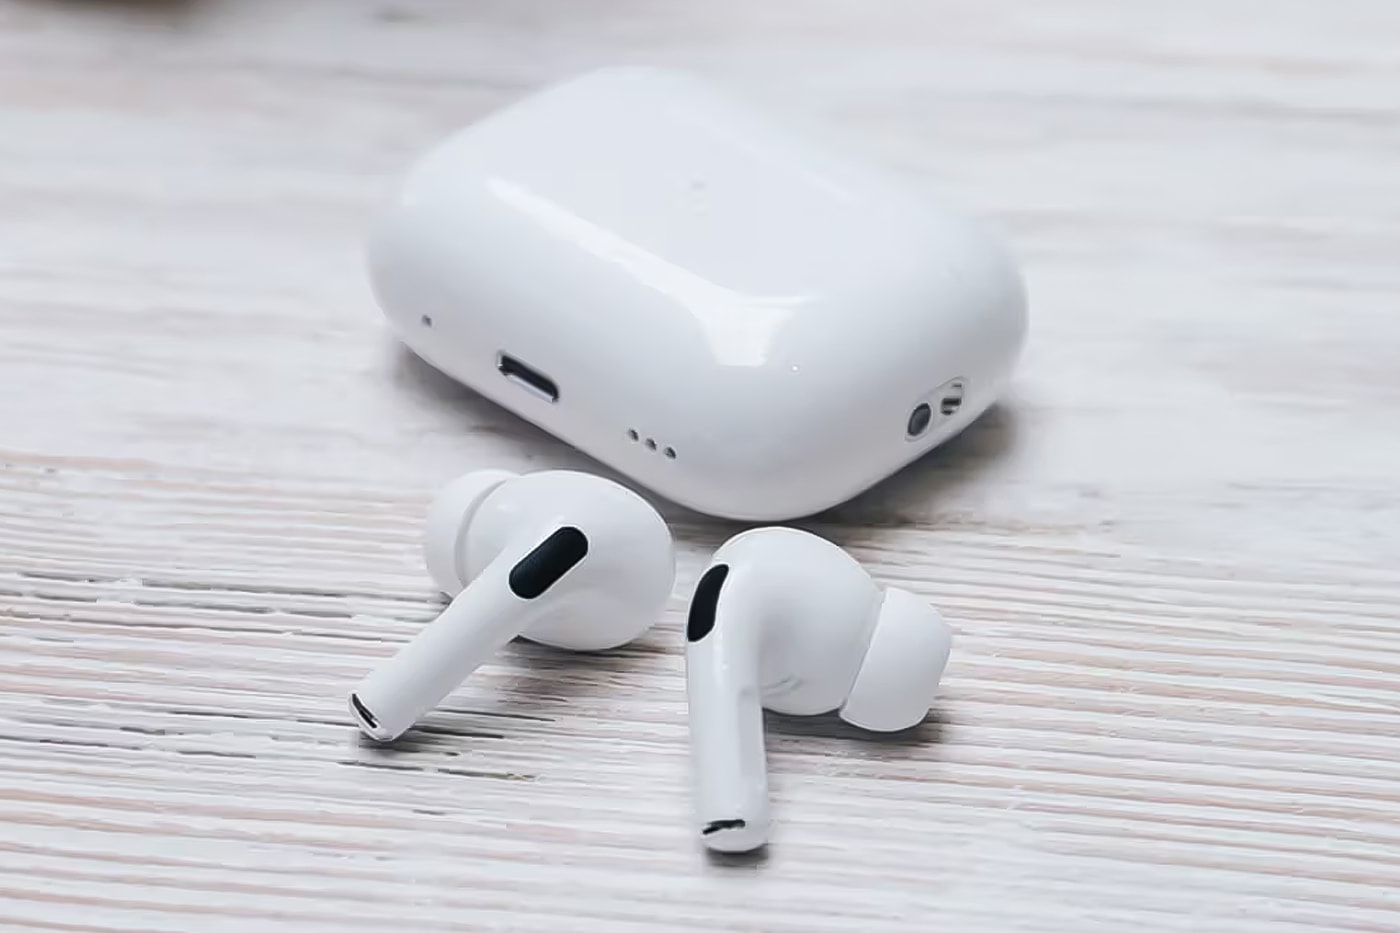 アップルからUSB-Cポートを採用した新型エアポッズプロ2が登場か Apple Rumored to Release AirPods Pro 2 With USB-C Charging Port headphpones earbuds earphones